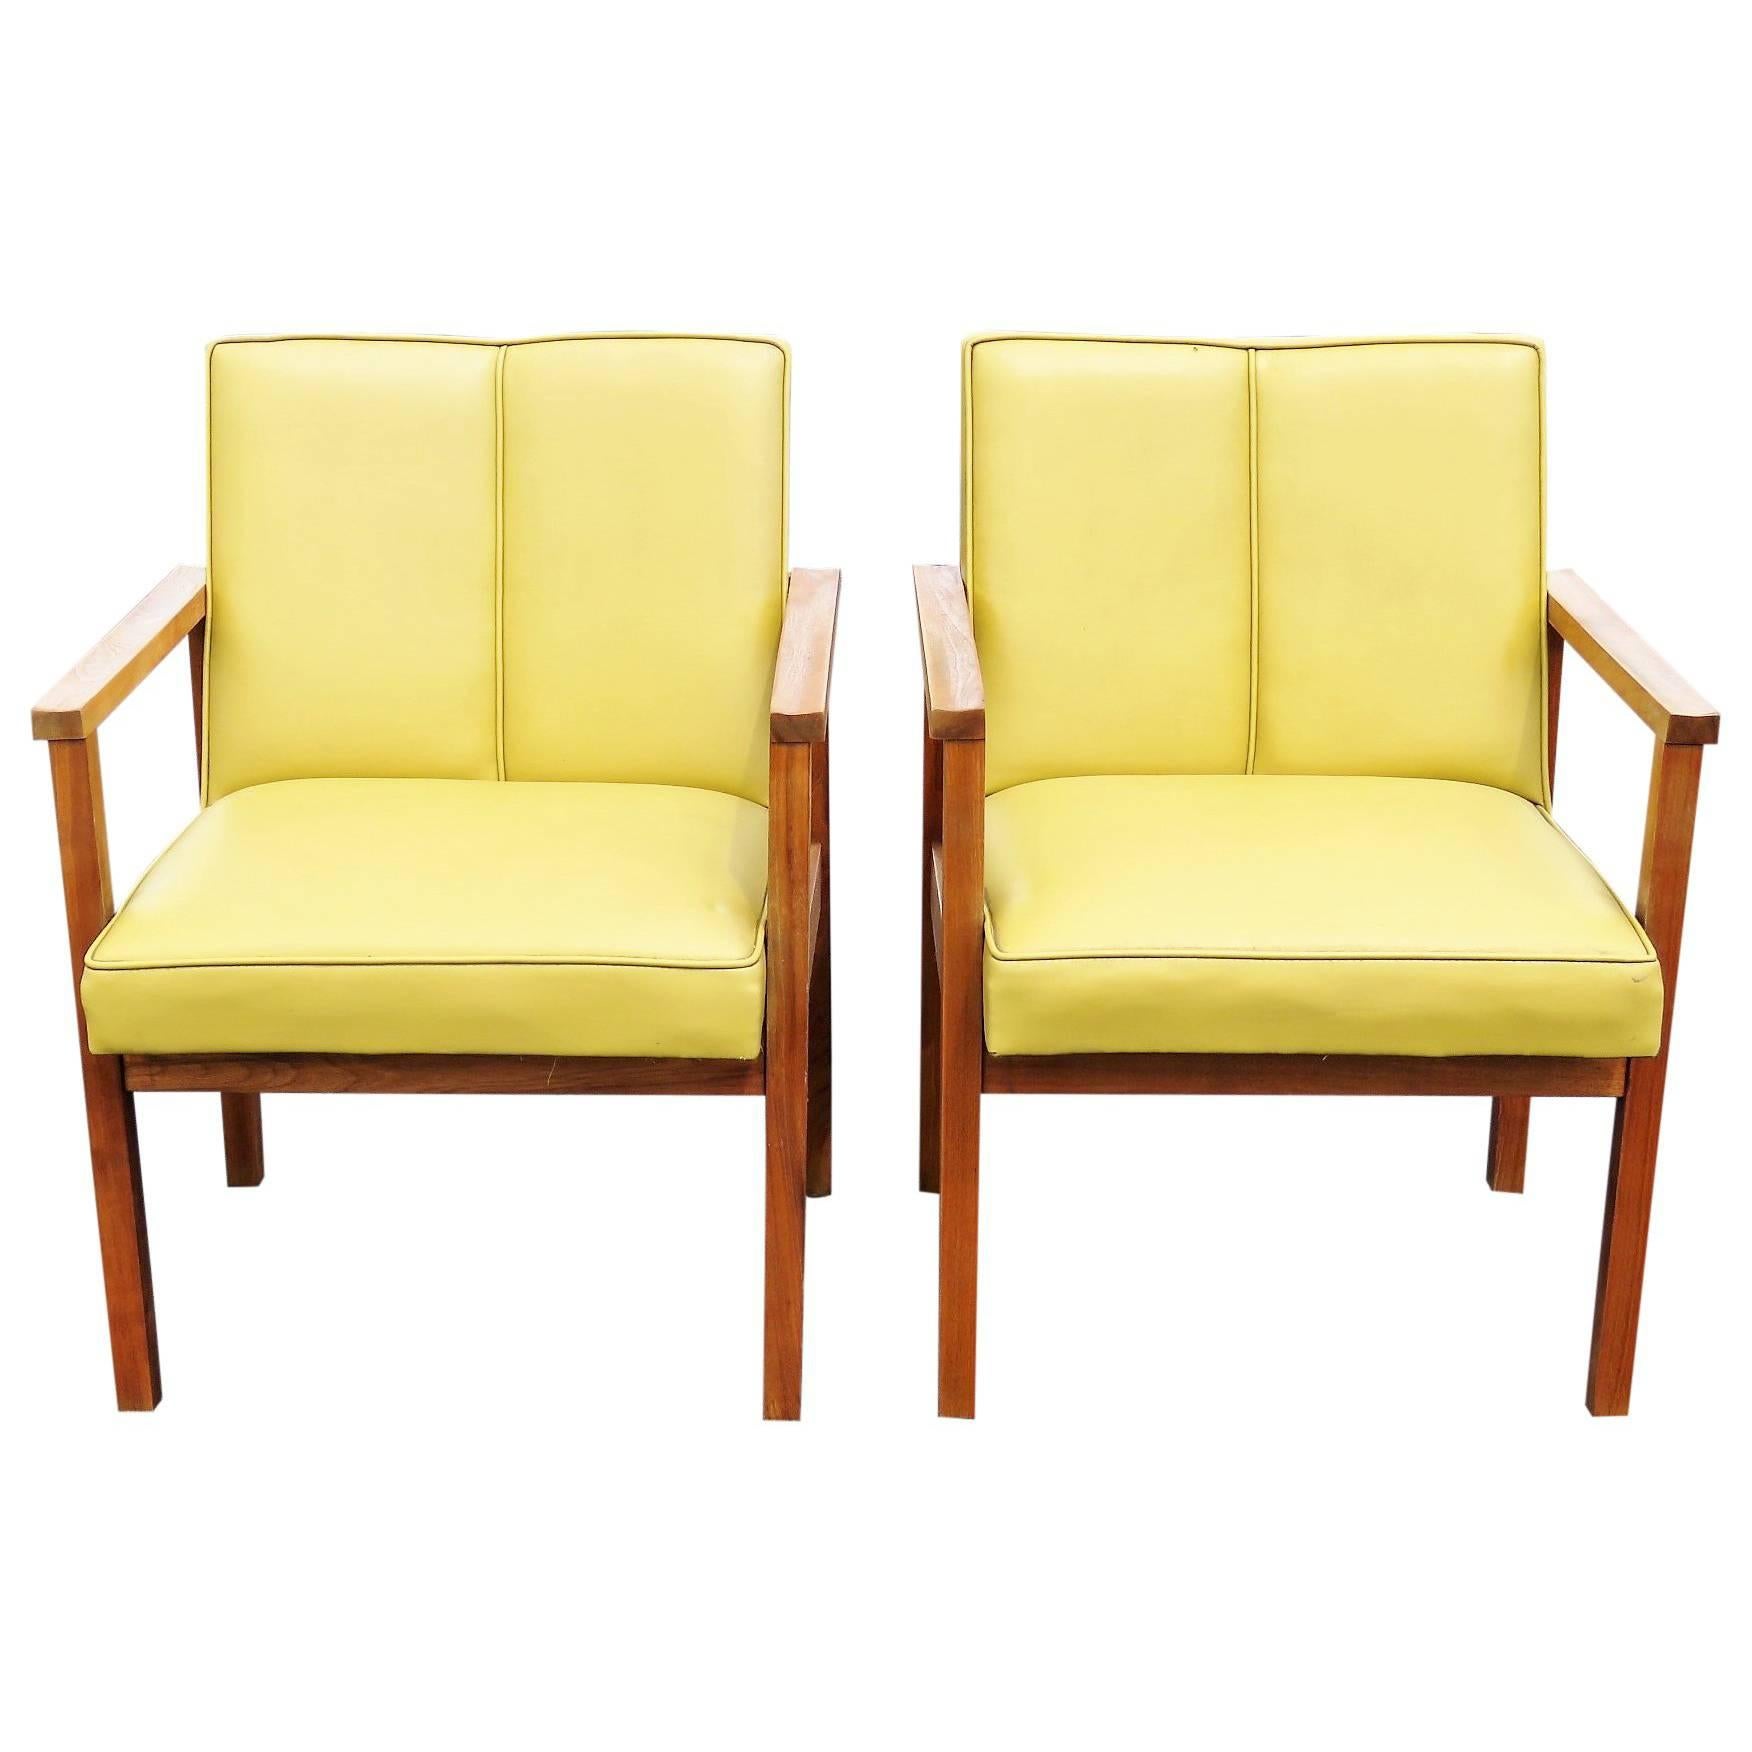 Pair of Danish Modern Walnut Lounge Chairs